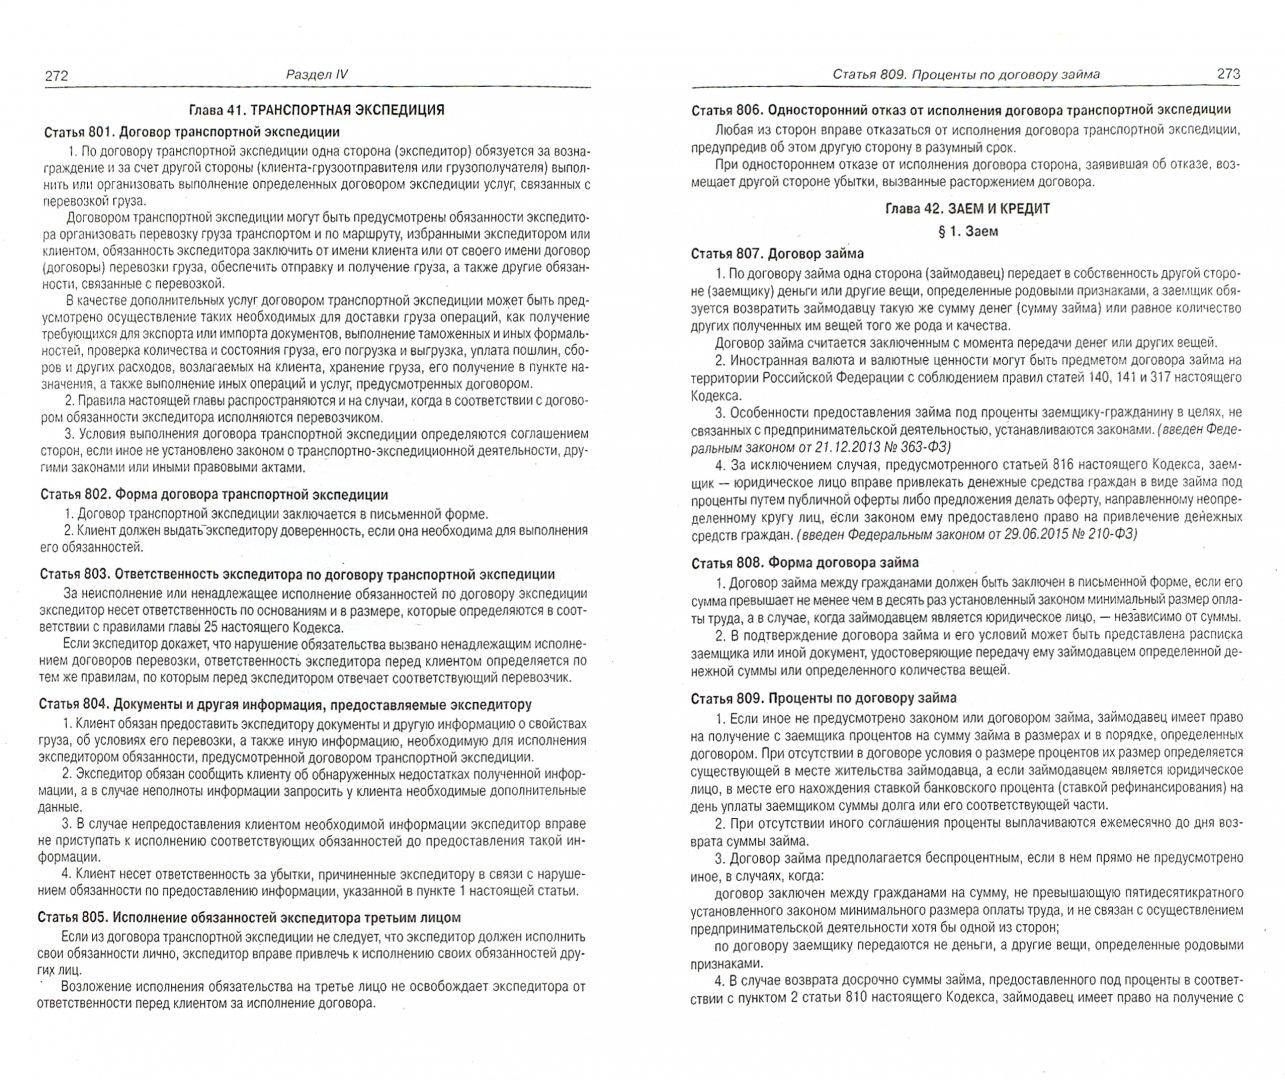 Иллюстрация 1 из 2 для Гражданский кодекс Российской Федерации по состоянию на 20.10.16 г. Части 1-4 | Лабиринт - книги. Источник: Лабиринт